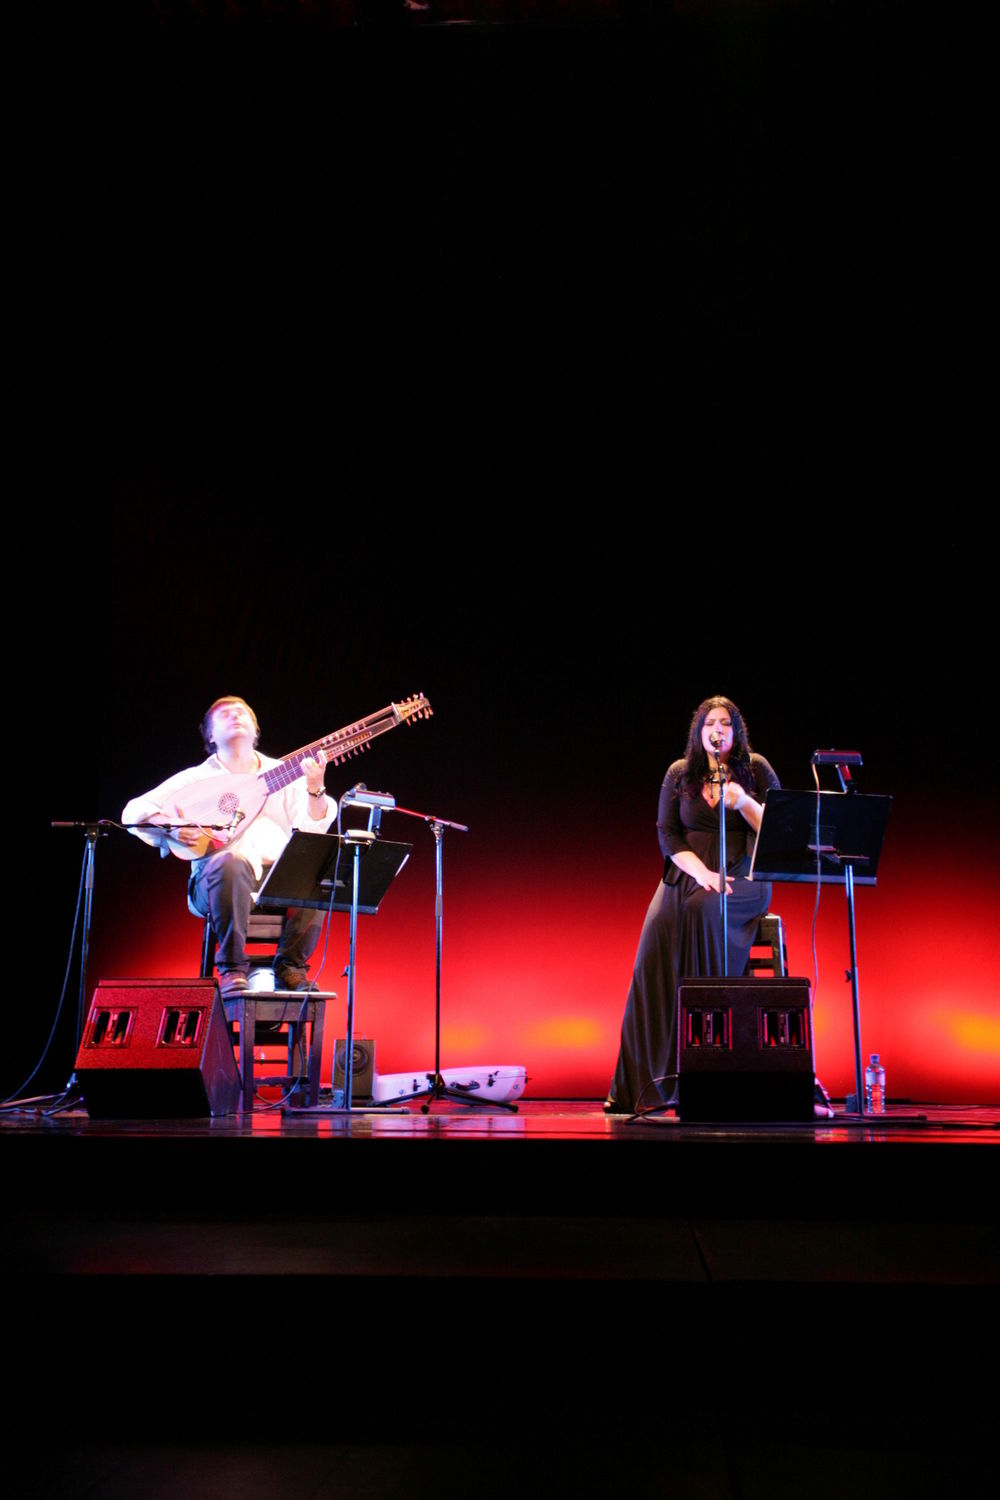 Makedonska muzička diva Kaliopi i renomirani virtuoz gitare i laute Edin Karamazov beogradskoj su publici u Pozorištu na Terazijama priredili nesvakidašnji muzički doživljaj.